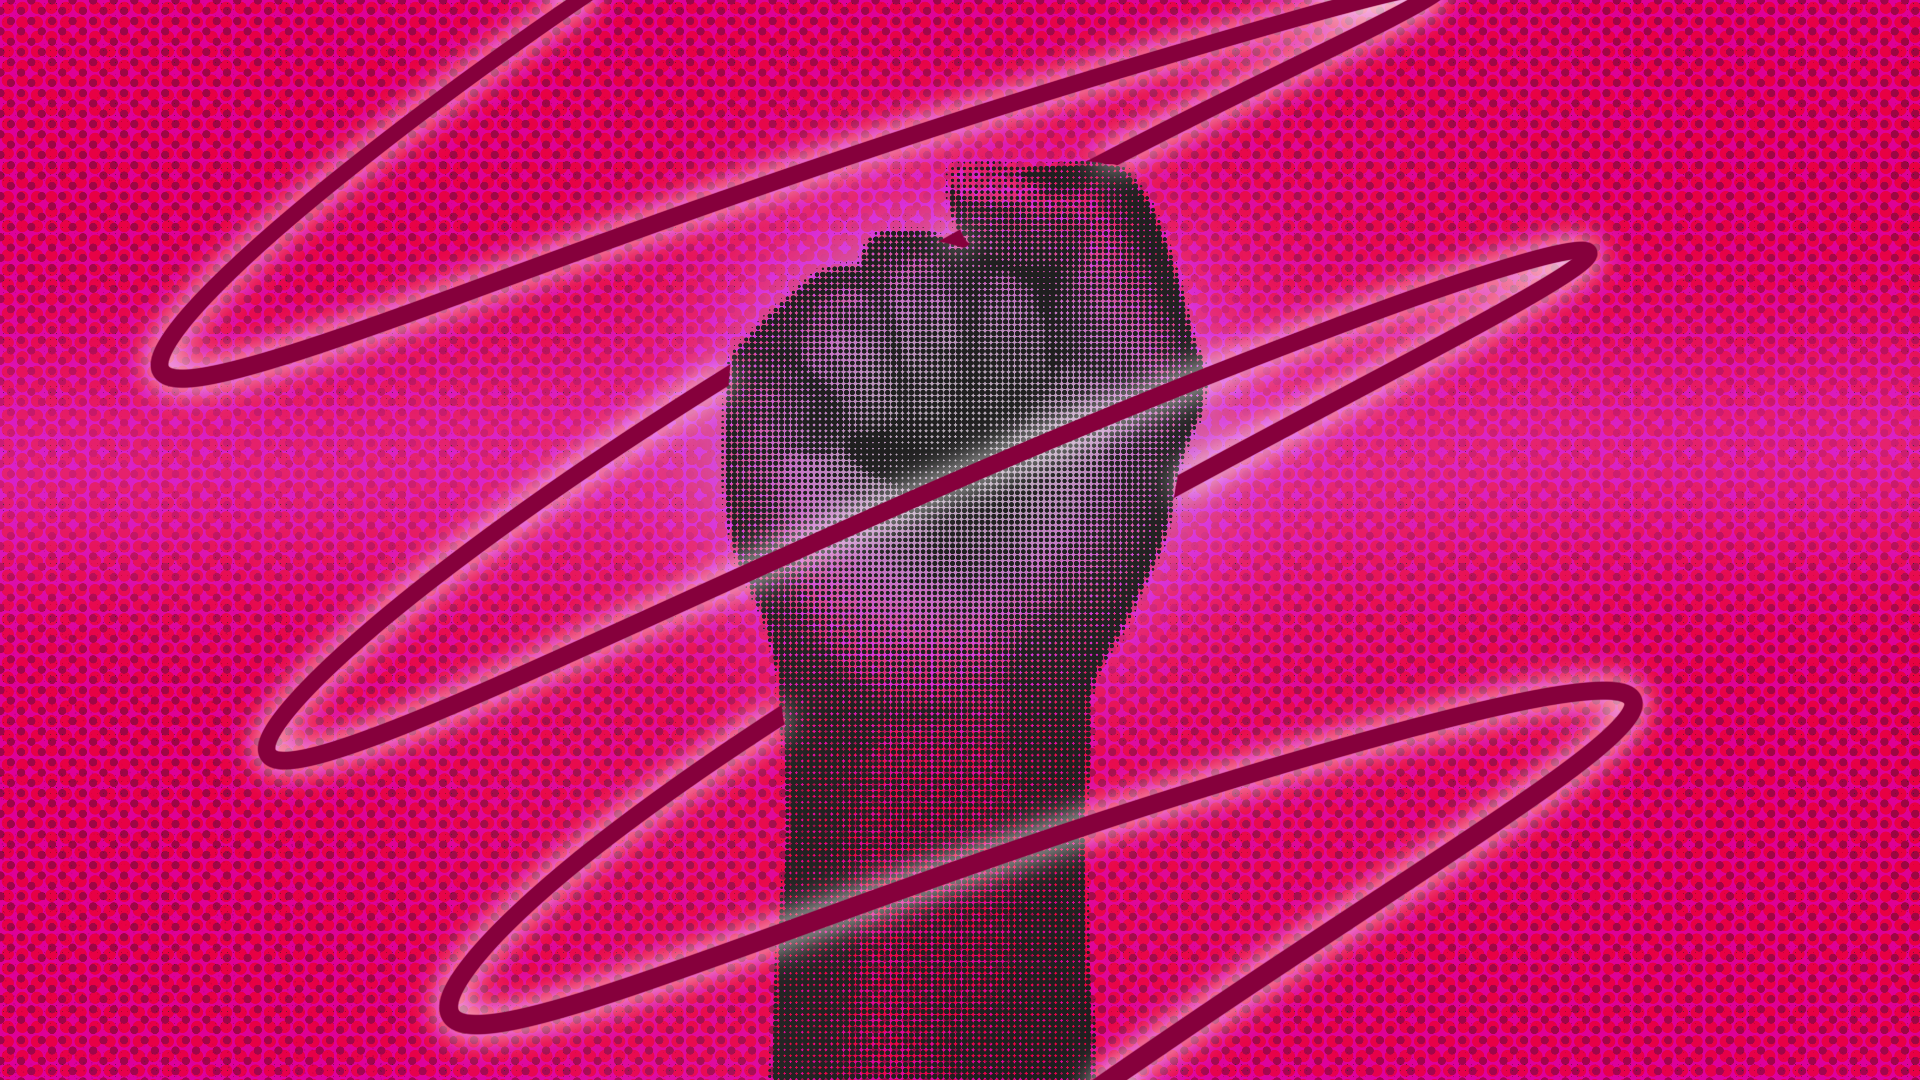 Image of a raised fist